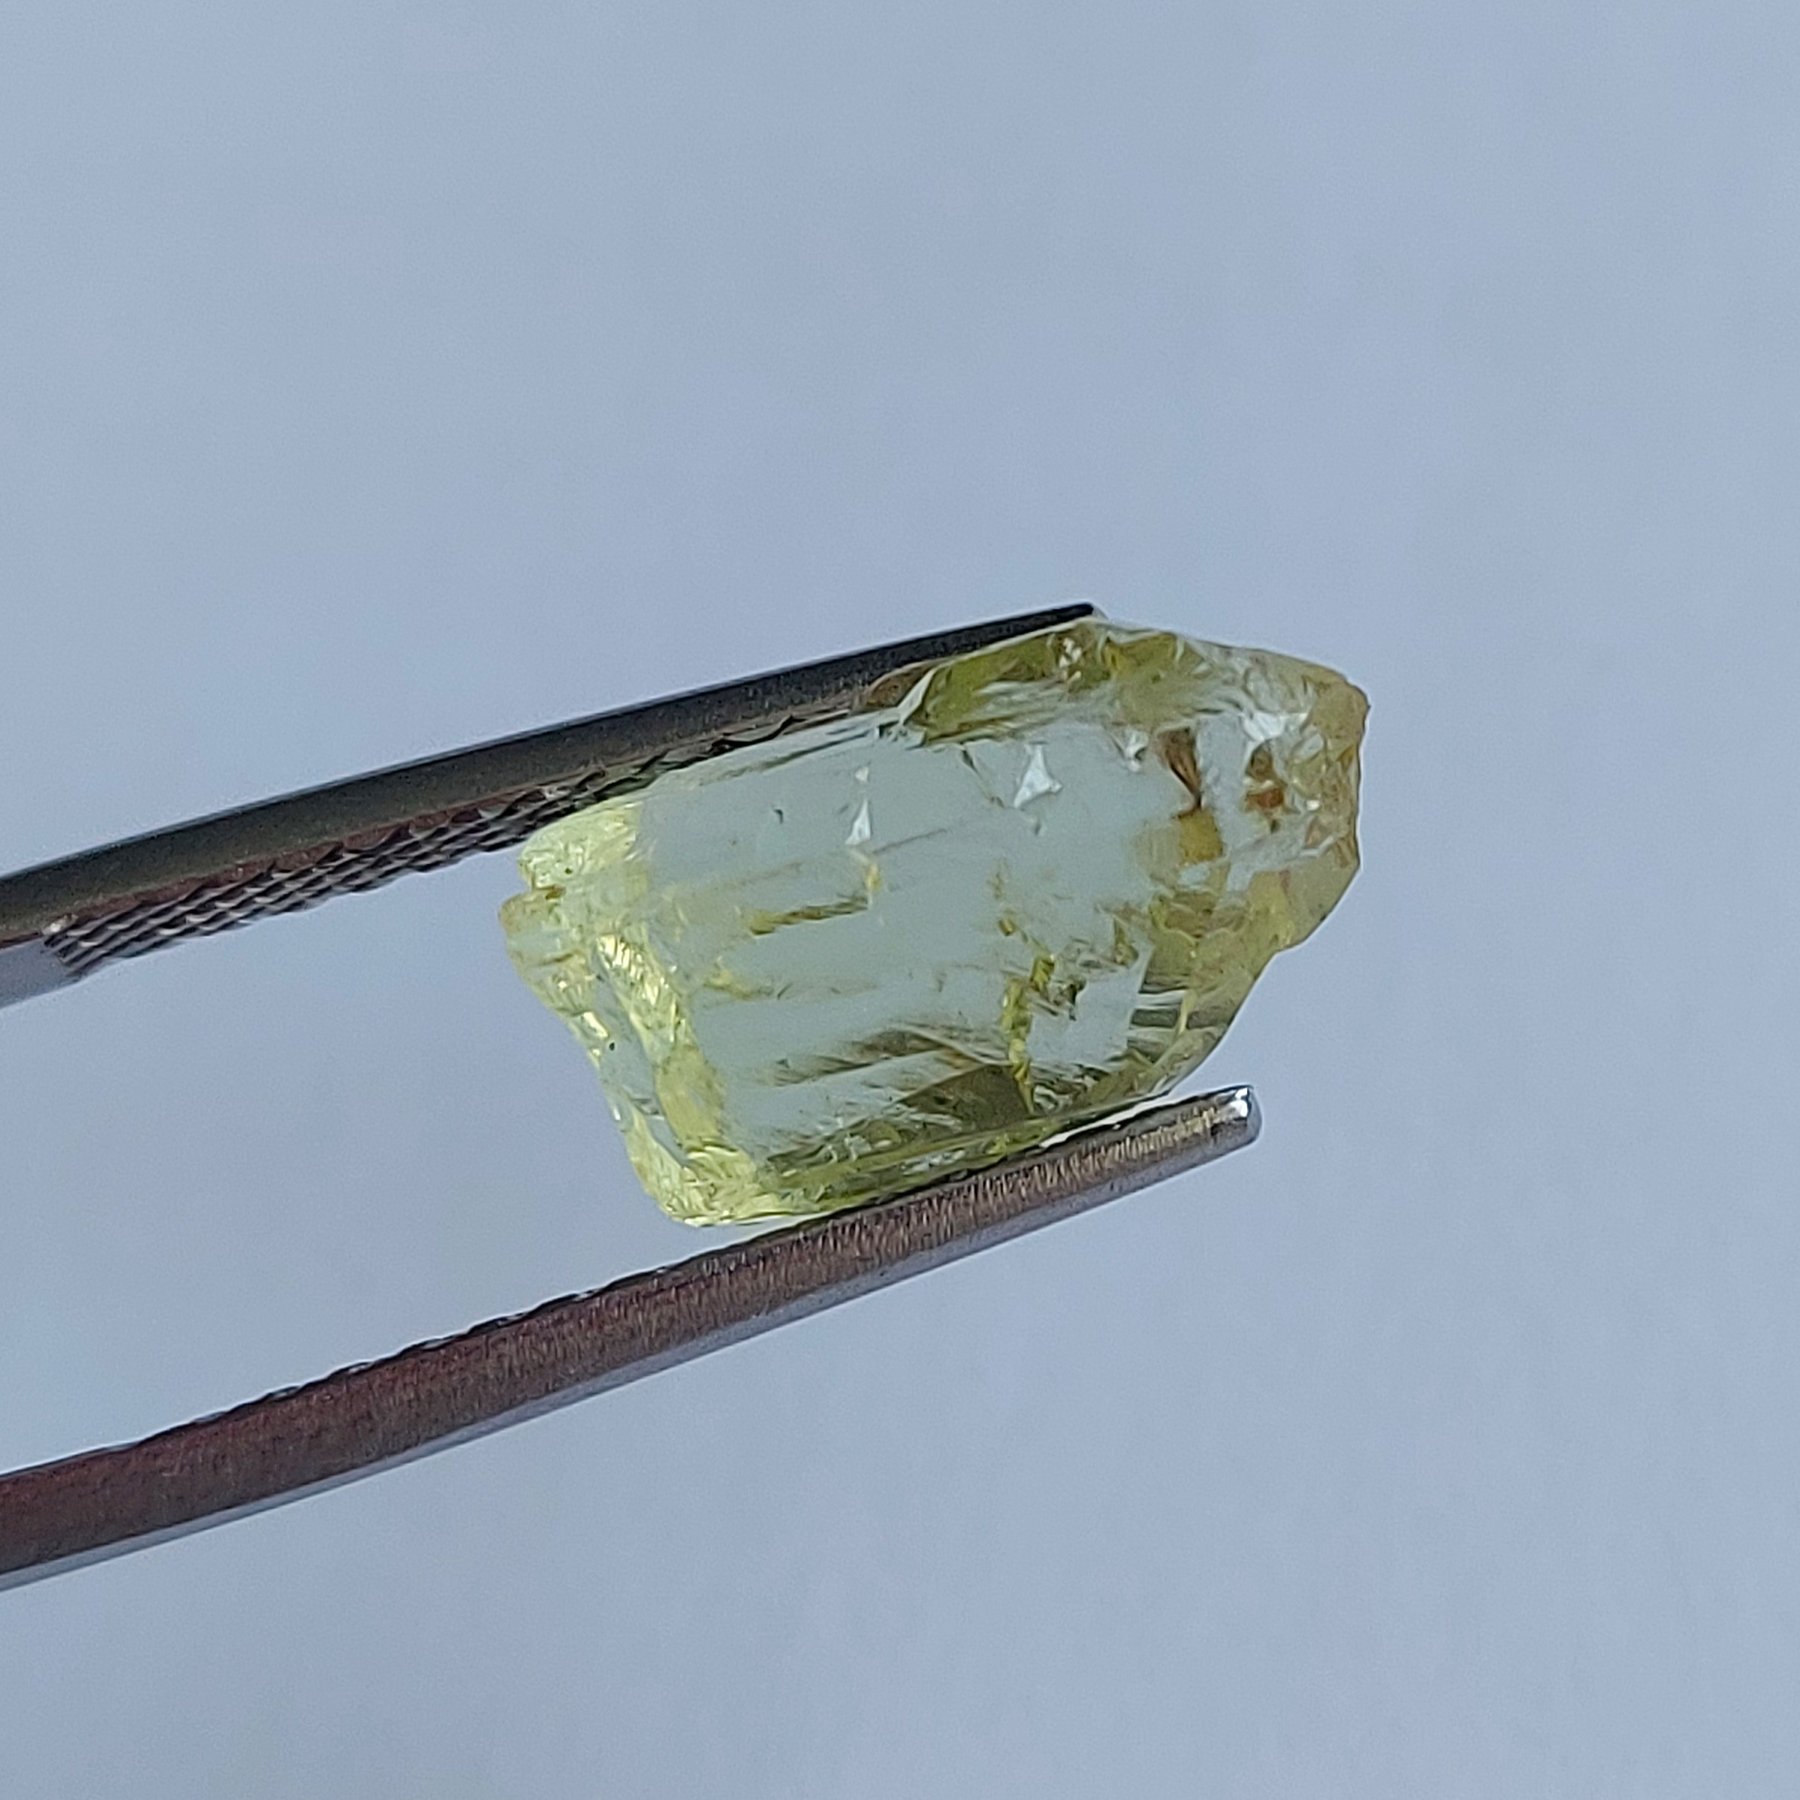 Берил Геліодор природний кристал 6,77 карат